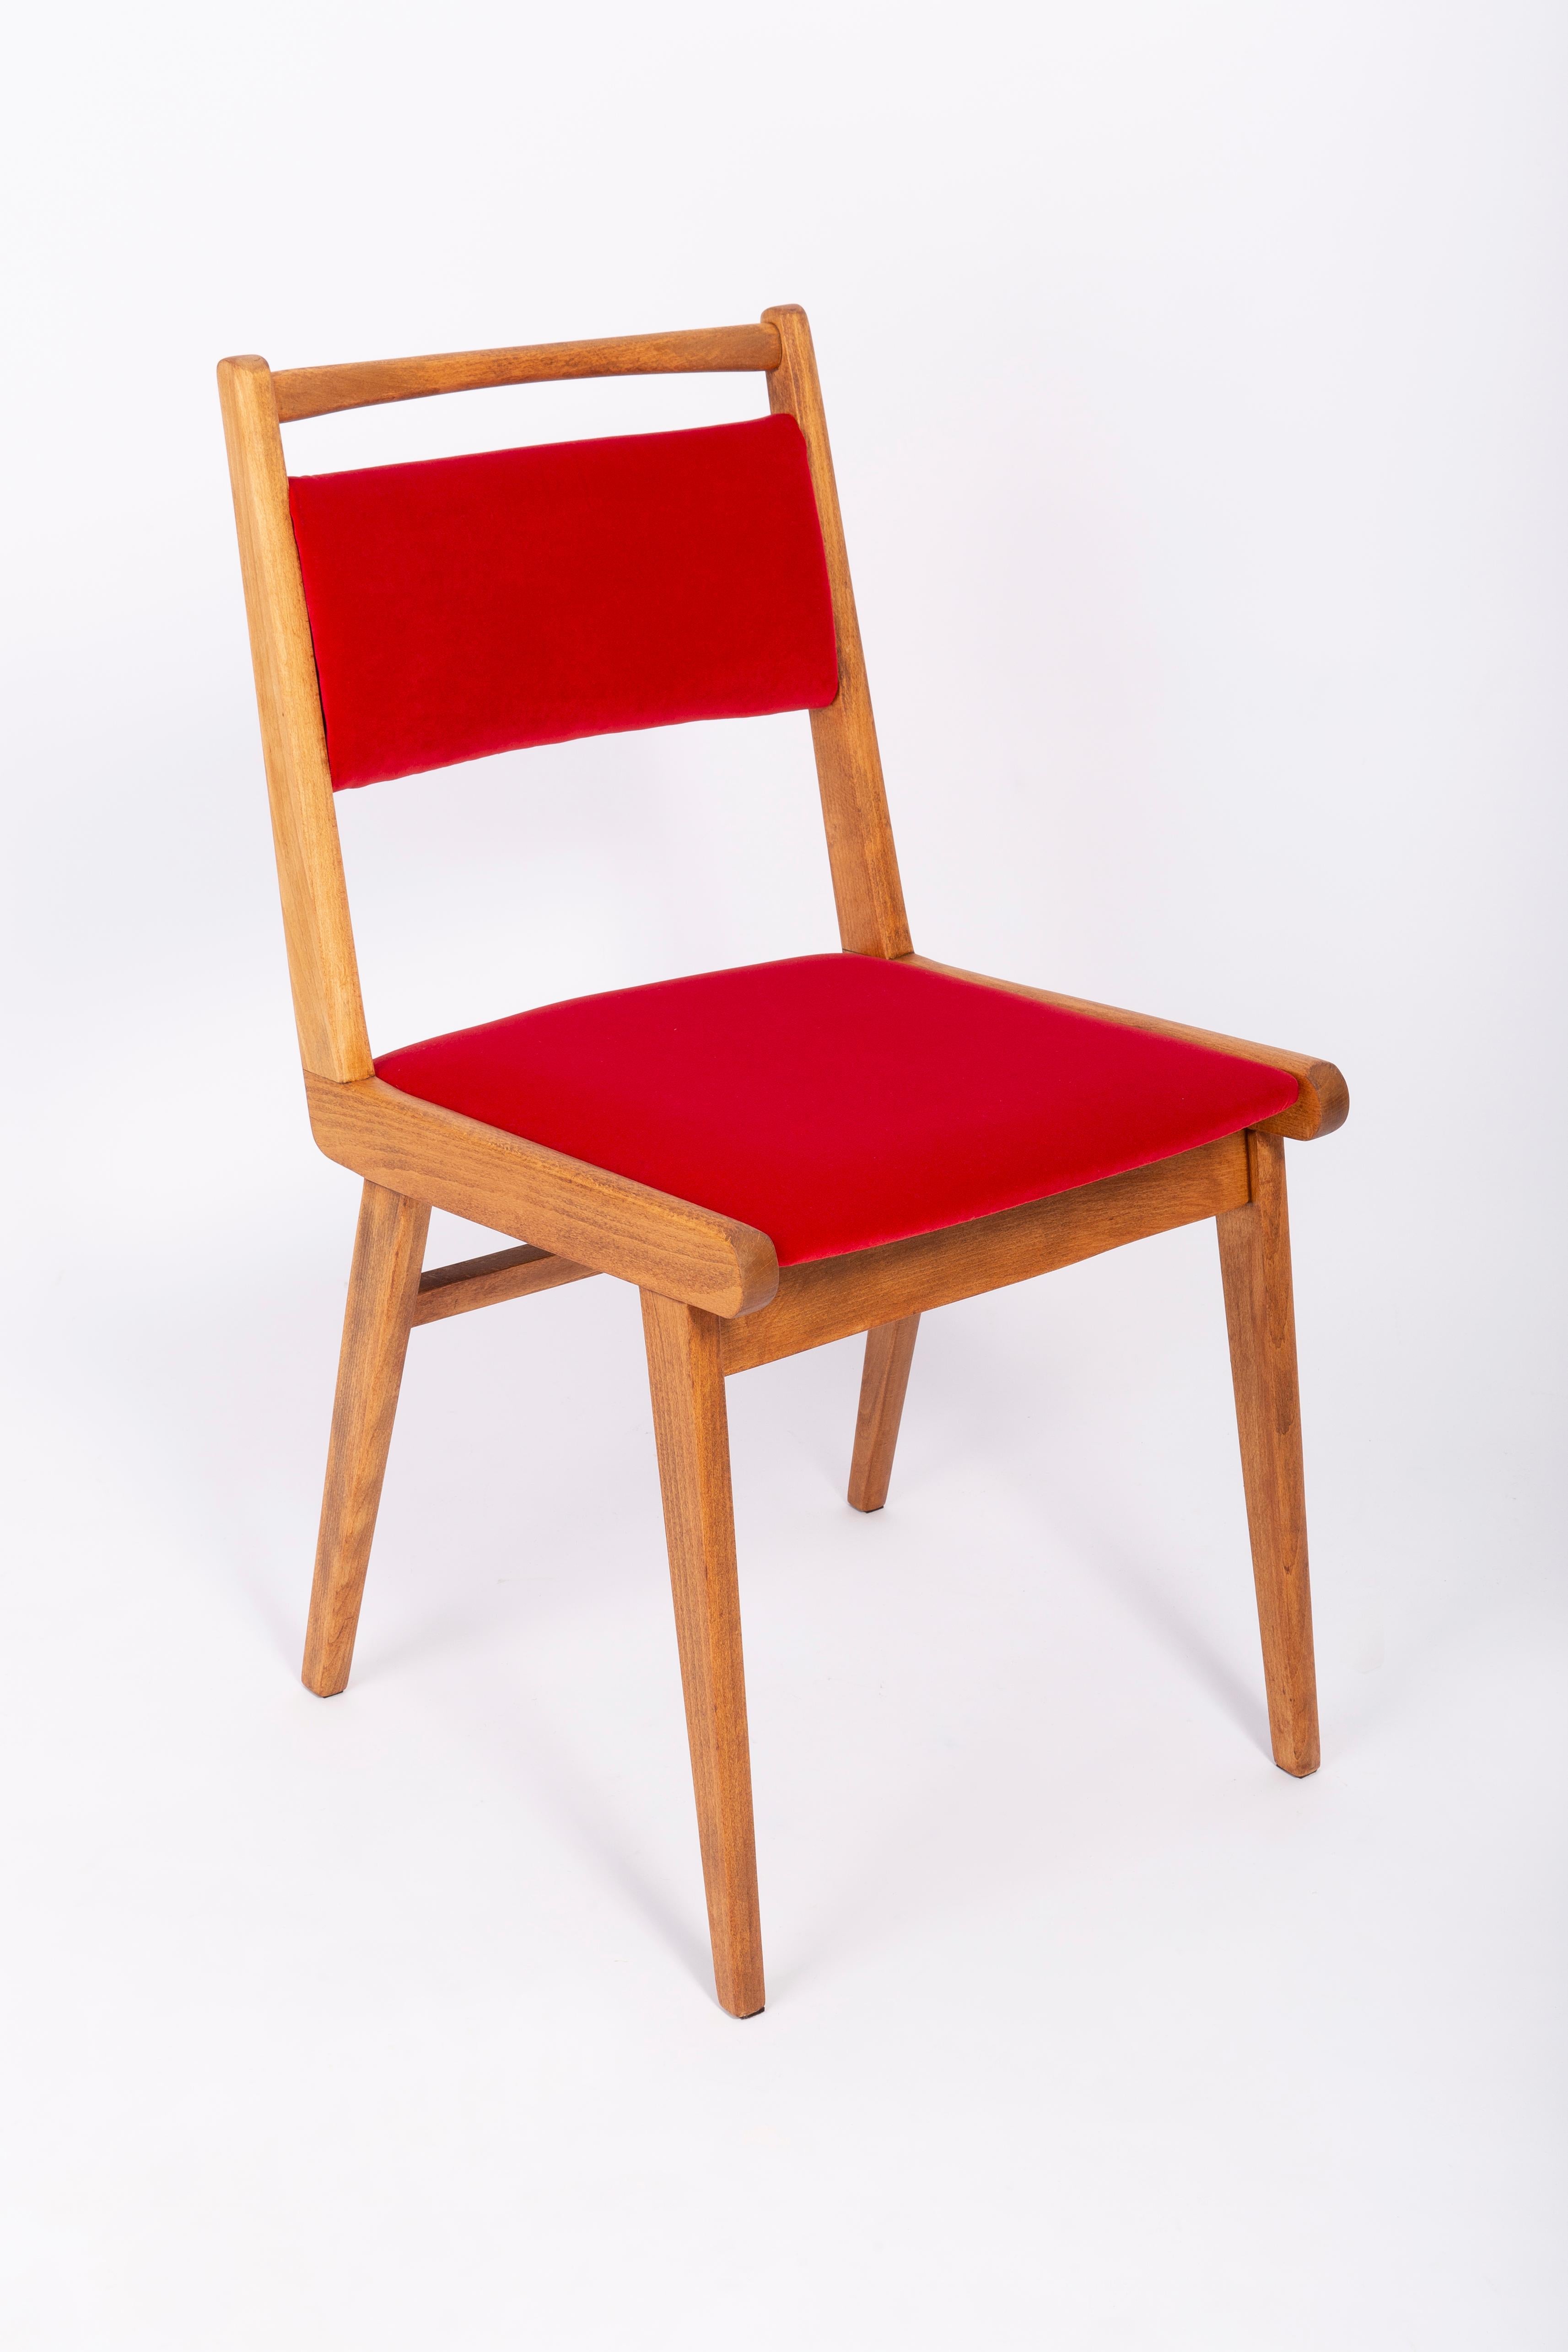 Chaise conçue par le prof. Rajmund Halas. C'est un modèle de type JAR. Fabriqué en bois de hêtre. Le fauteuil a subi une rénovation complète de la tapisserie et les boiseries ont été rafraîchies. L'assise et le dossier sont habillés d'un tissu en